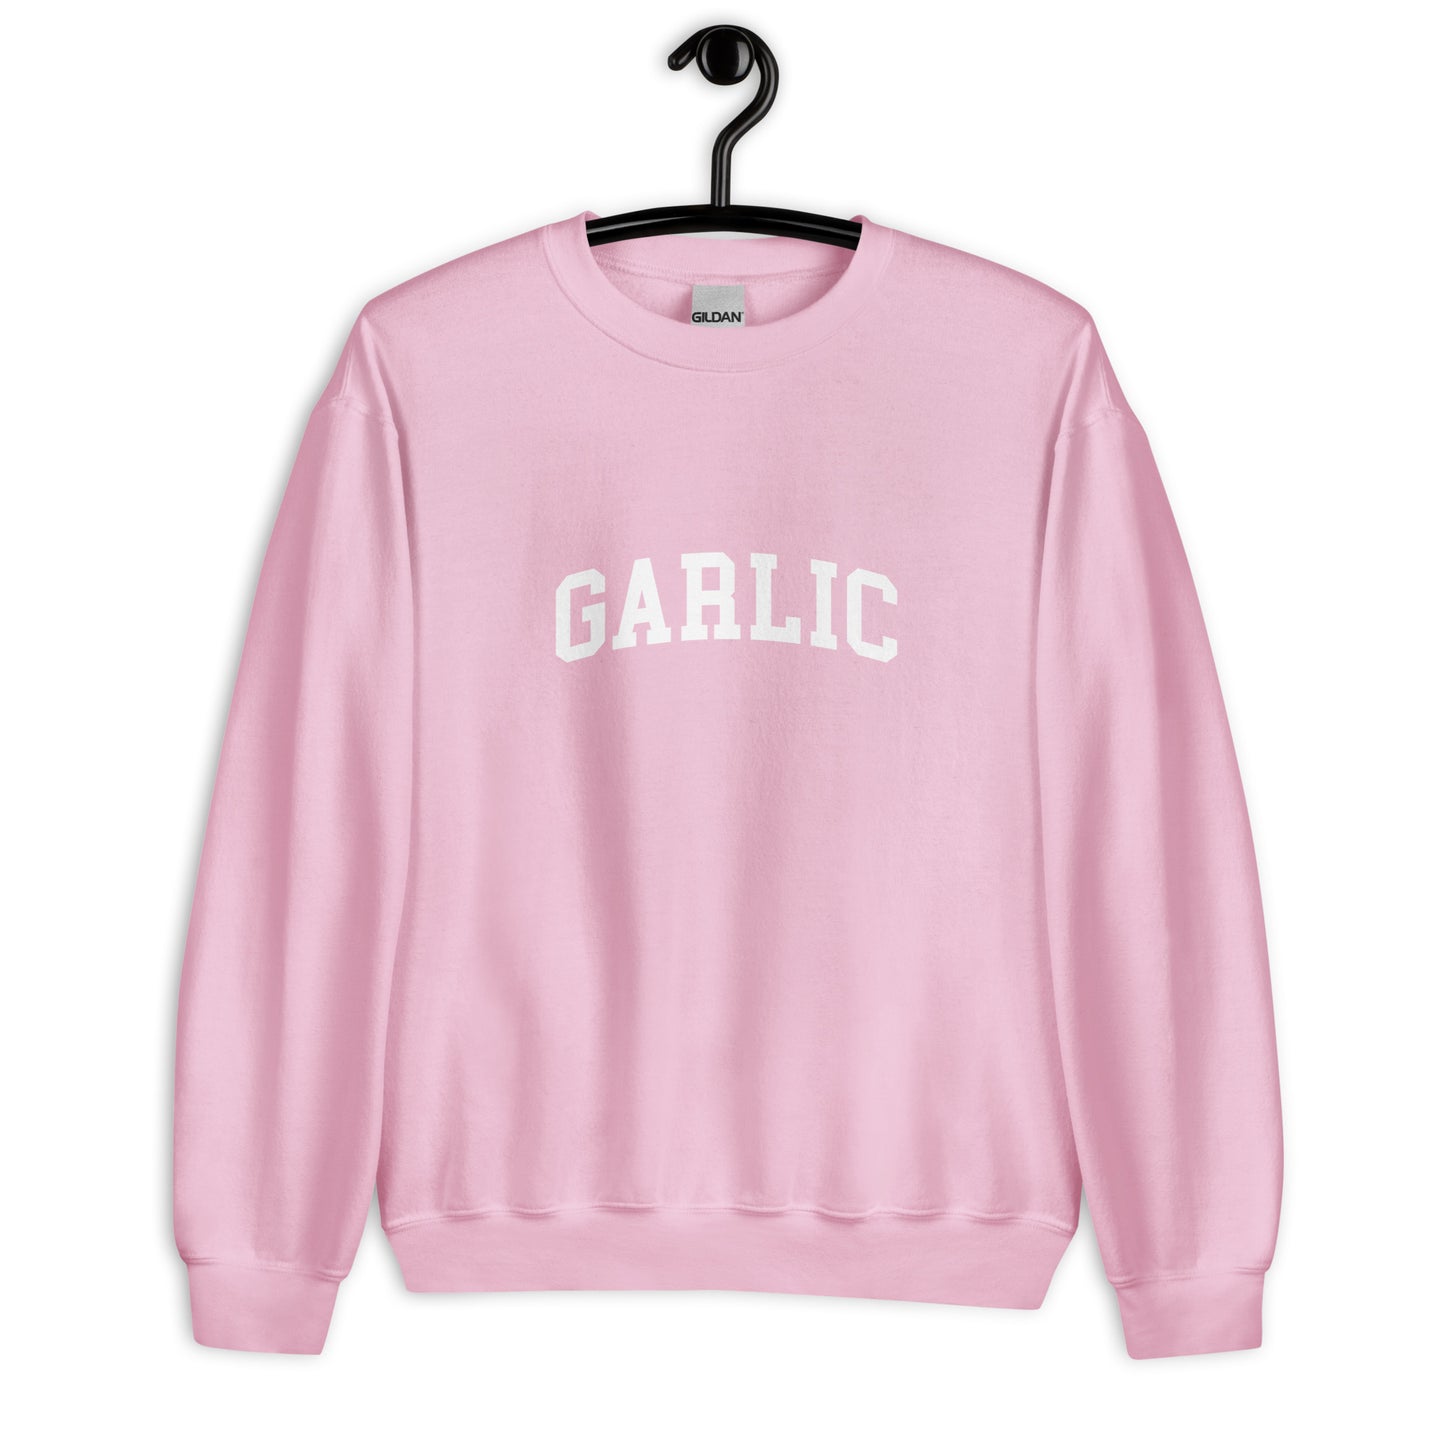 Garlic Sweatshirt - Arched Font